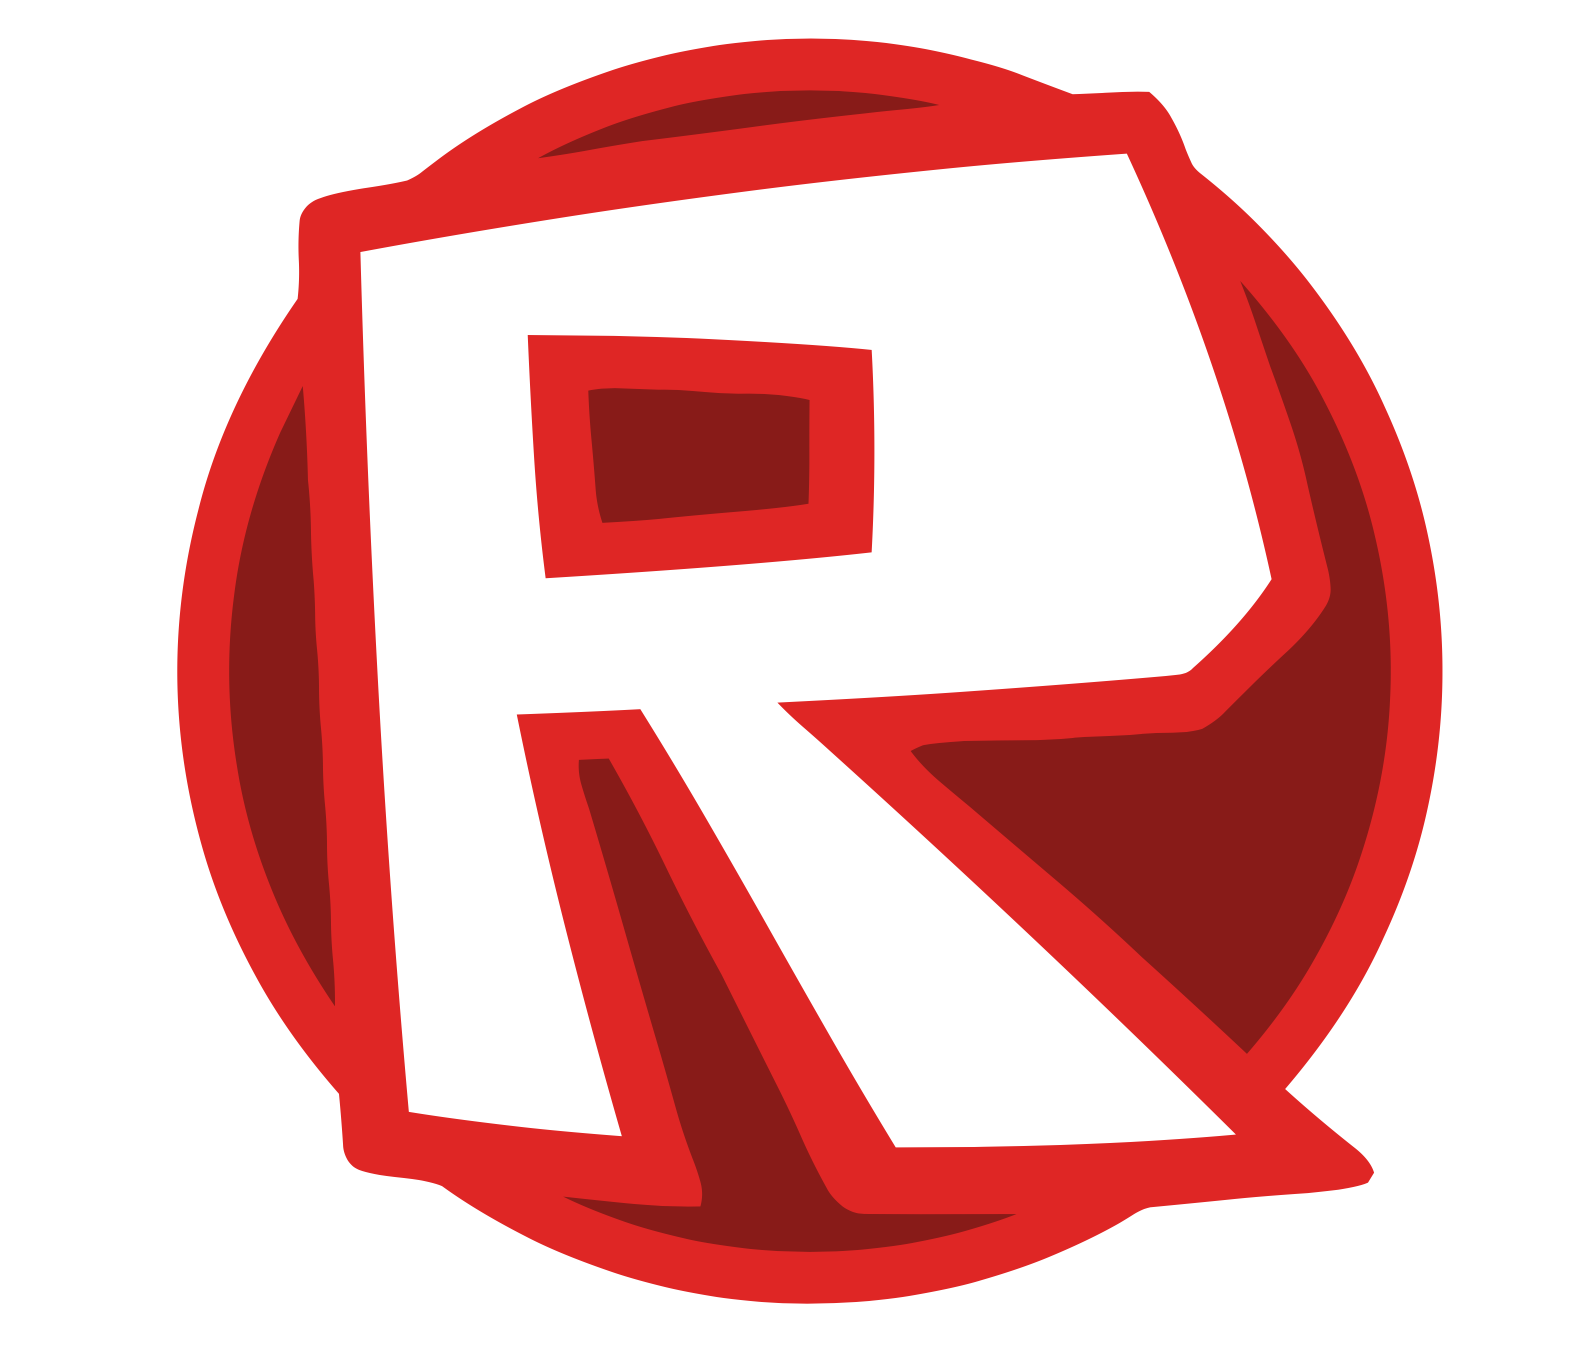 New roblox site? : r/roblox